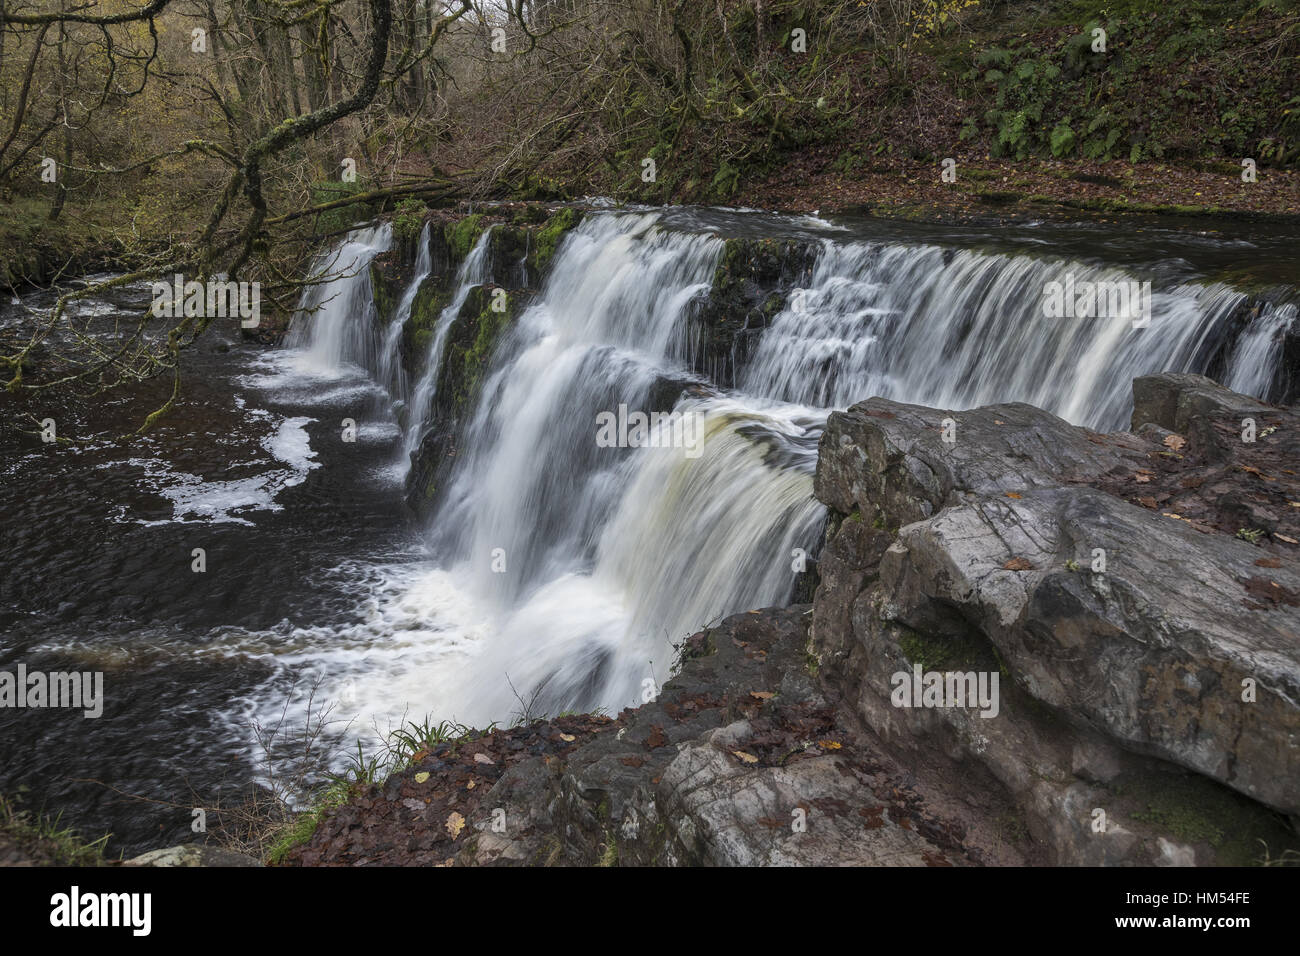 Fallen Sie Sgwd y Pannwr, die Fuller Afon Mellte, Ystradfellte, vier Wasserfälle, Brecon Beacons. Stockfoto